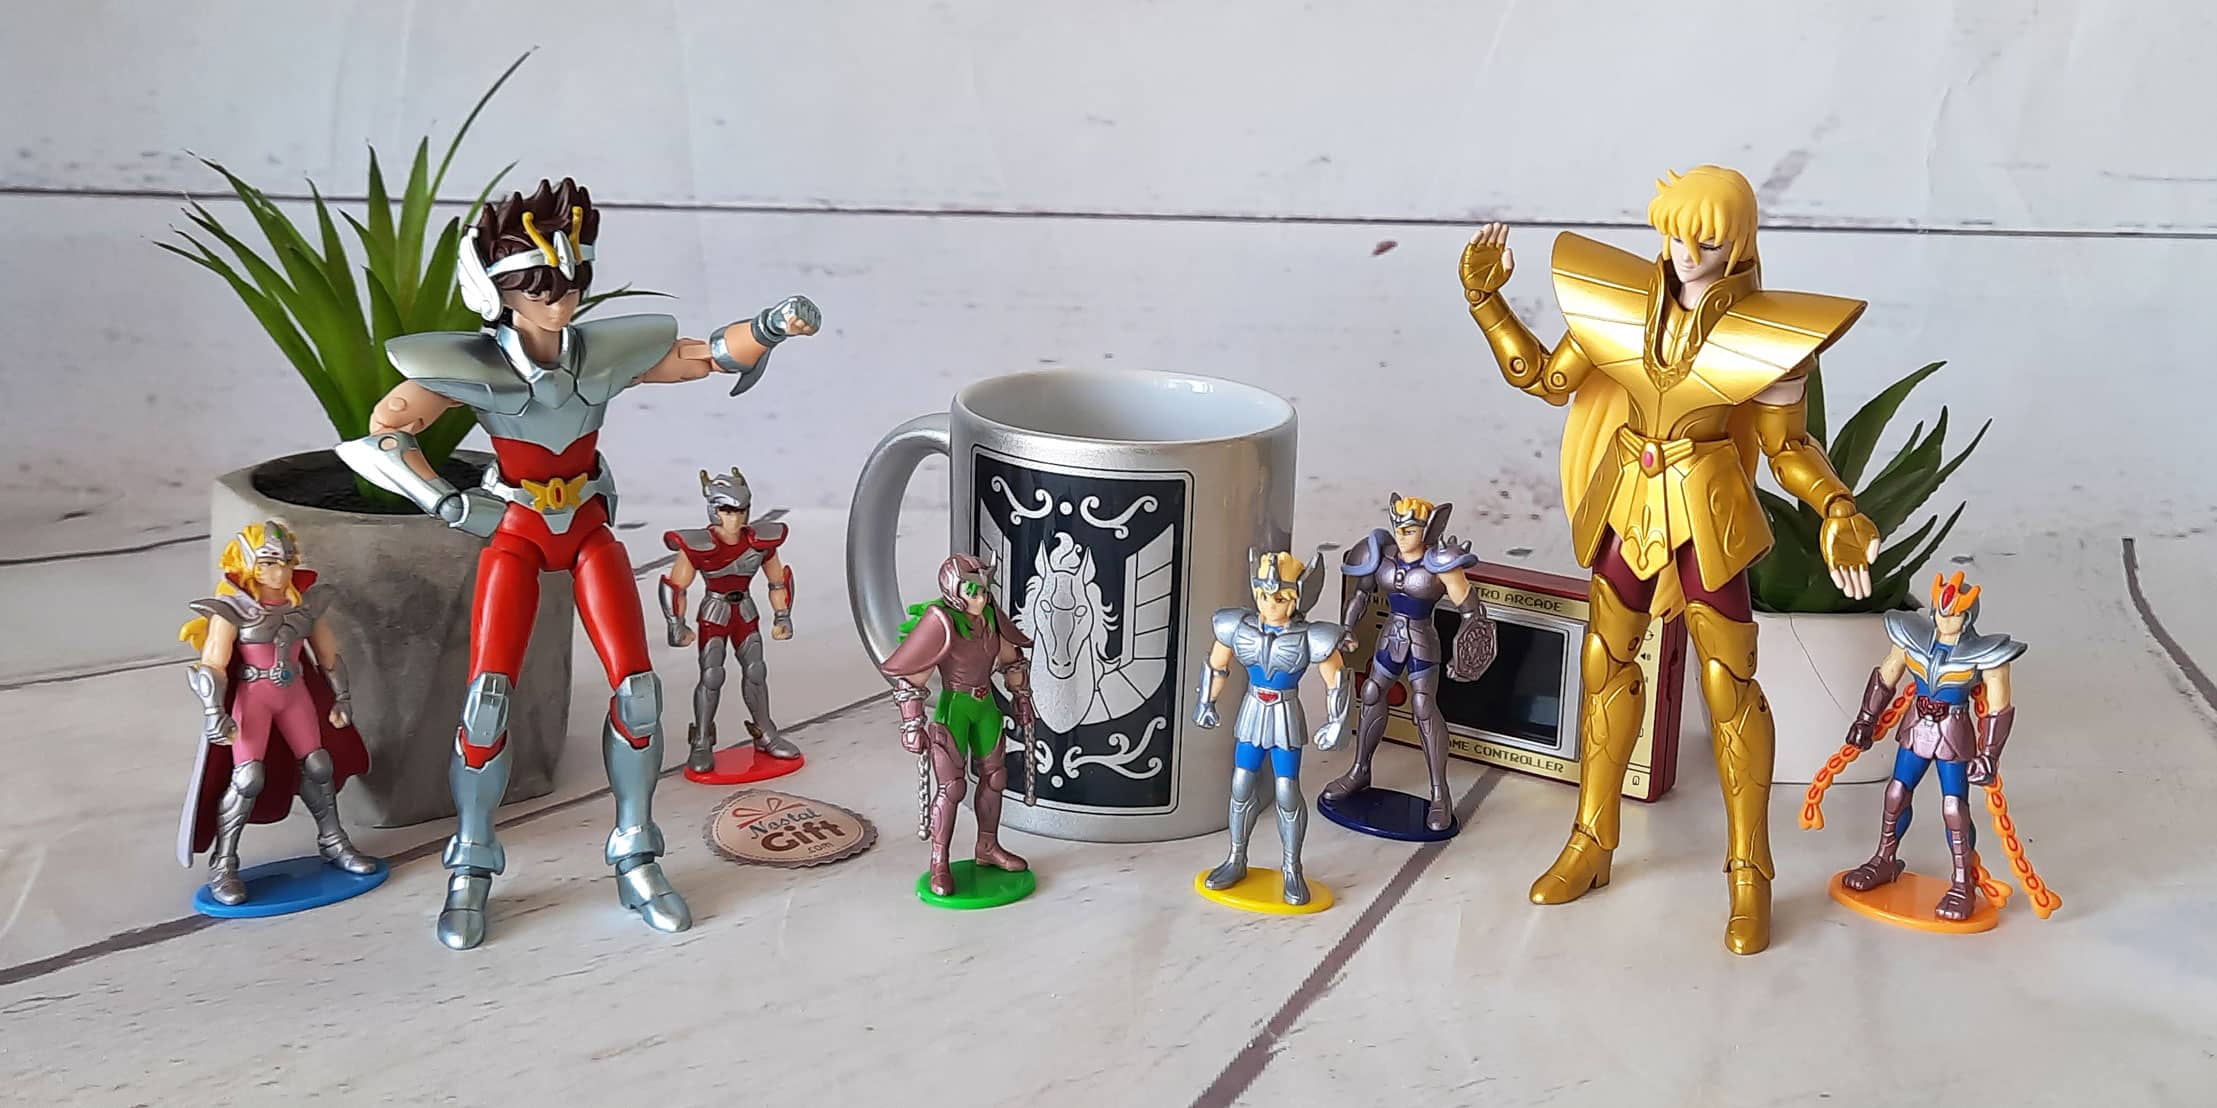 <p>Retrouvez les figurines pour créer l’ambiance des aventures des Chevaliers du Zodiaque, dans les différents chapitres du manga. Ainsi que des mugs et autres goodies, les cadeaux idéaux pour les fans de Saint Seiya.</p>